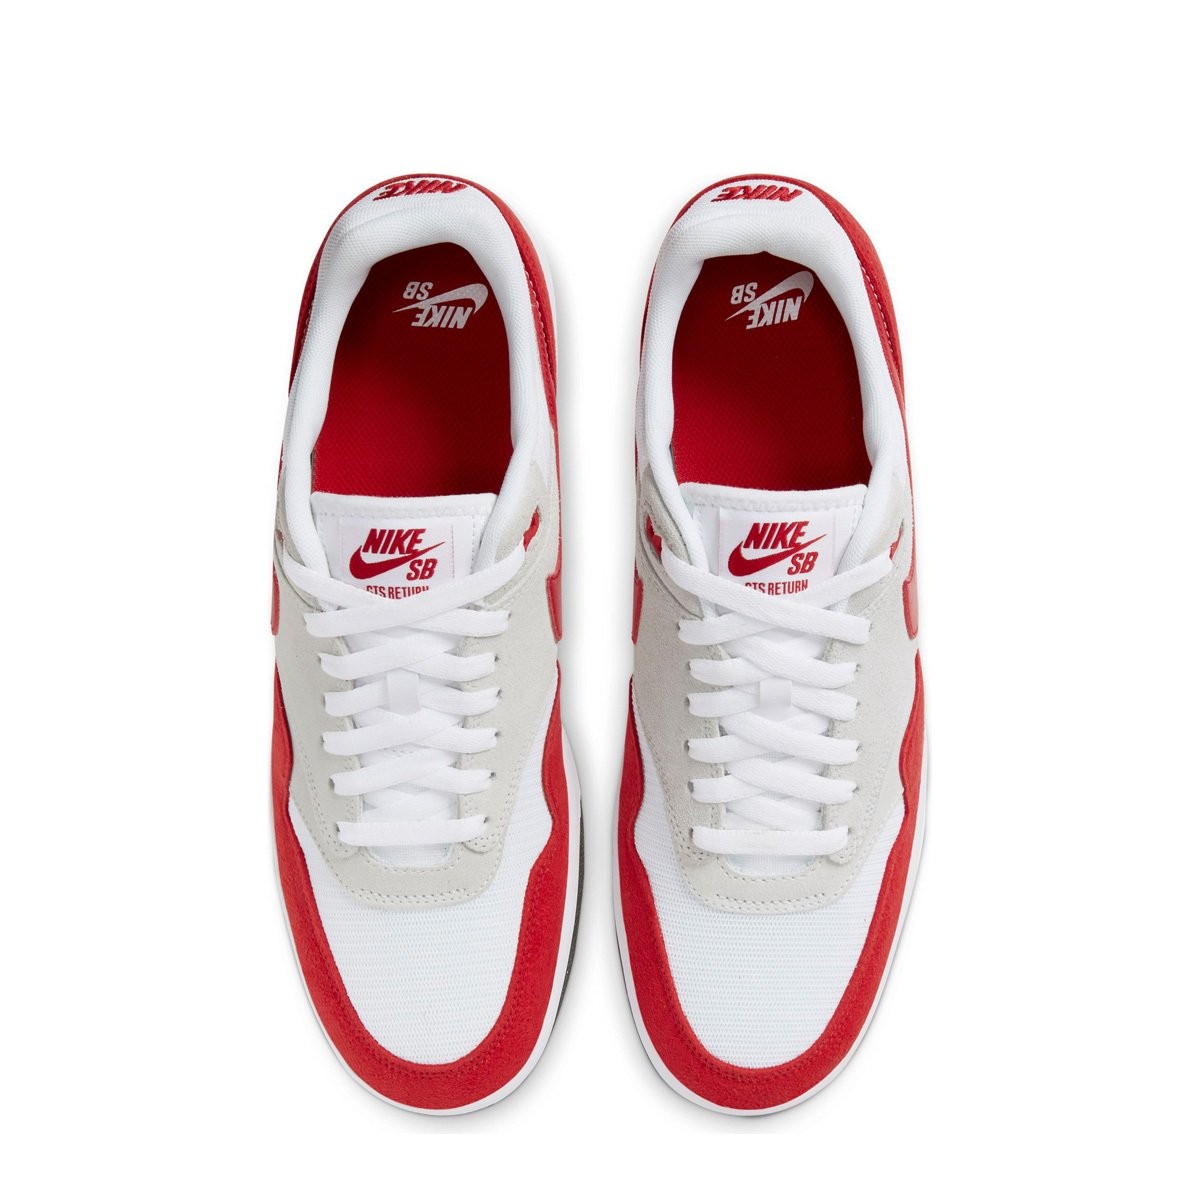 Nike SB GTS Return Premium Erkek Ayakkabısı CK3464-600